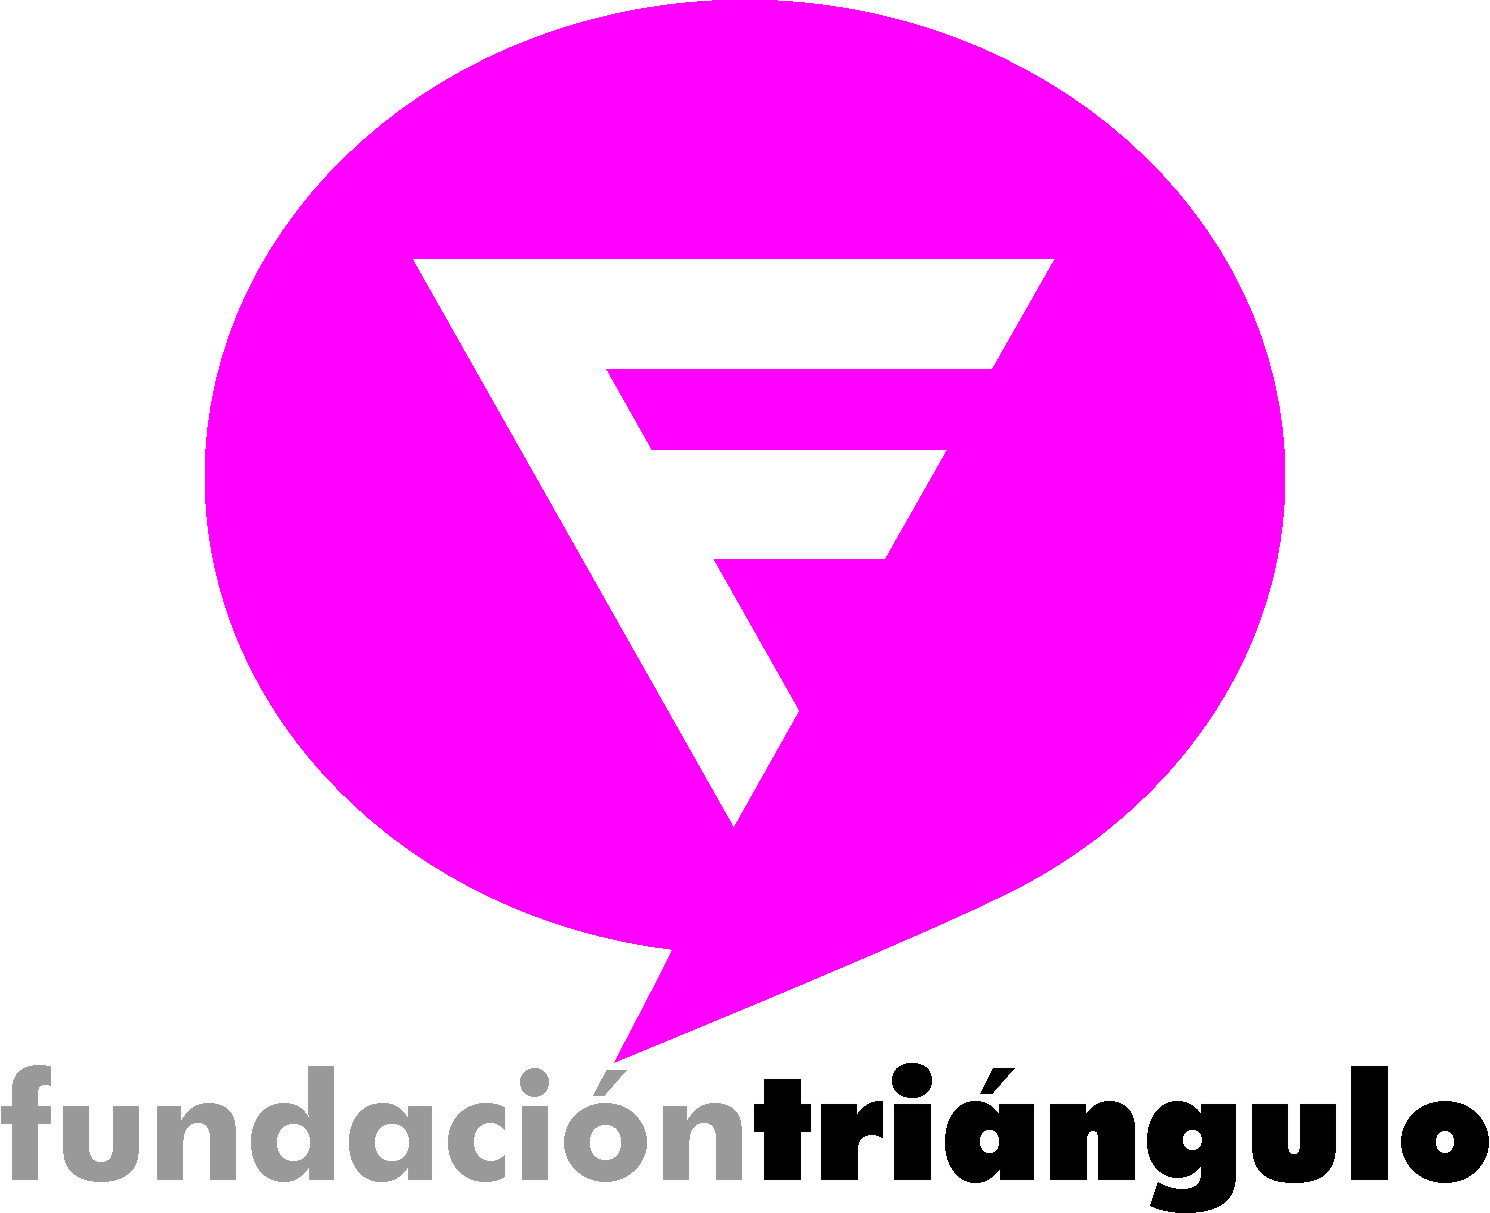 Fundación Triángulo